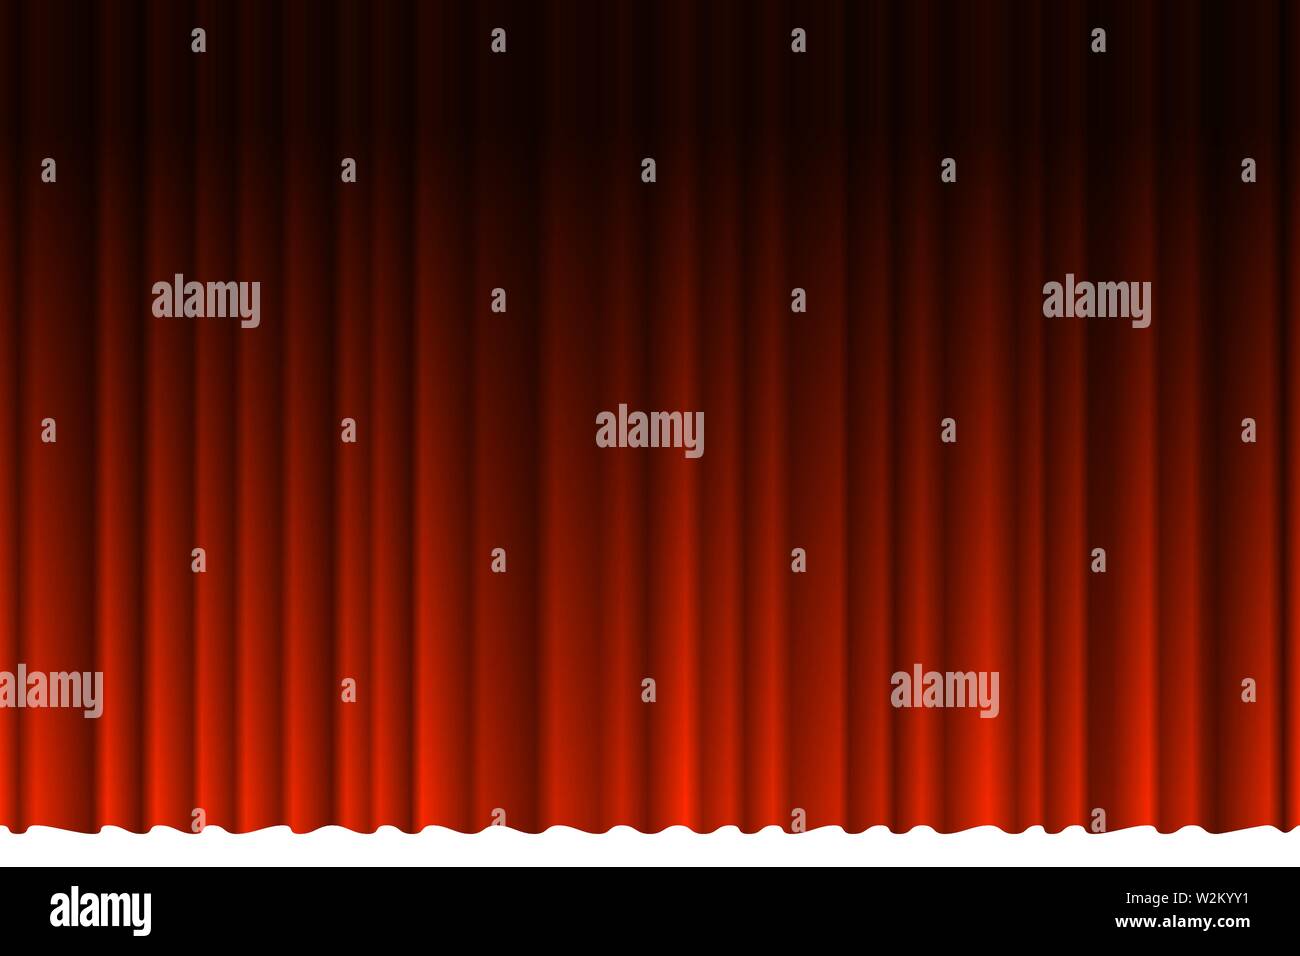 Geschlossener Luxus roten Vorhang mit vielen Schatten Bühne Hintergrund Spotlight Strahl beleuchtet. Theatralische Samtstoff Vorhänge Bühne Eröffnungszeremonie. Vektorgrafik Stock Vektor